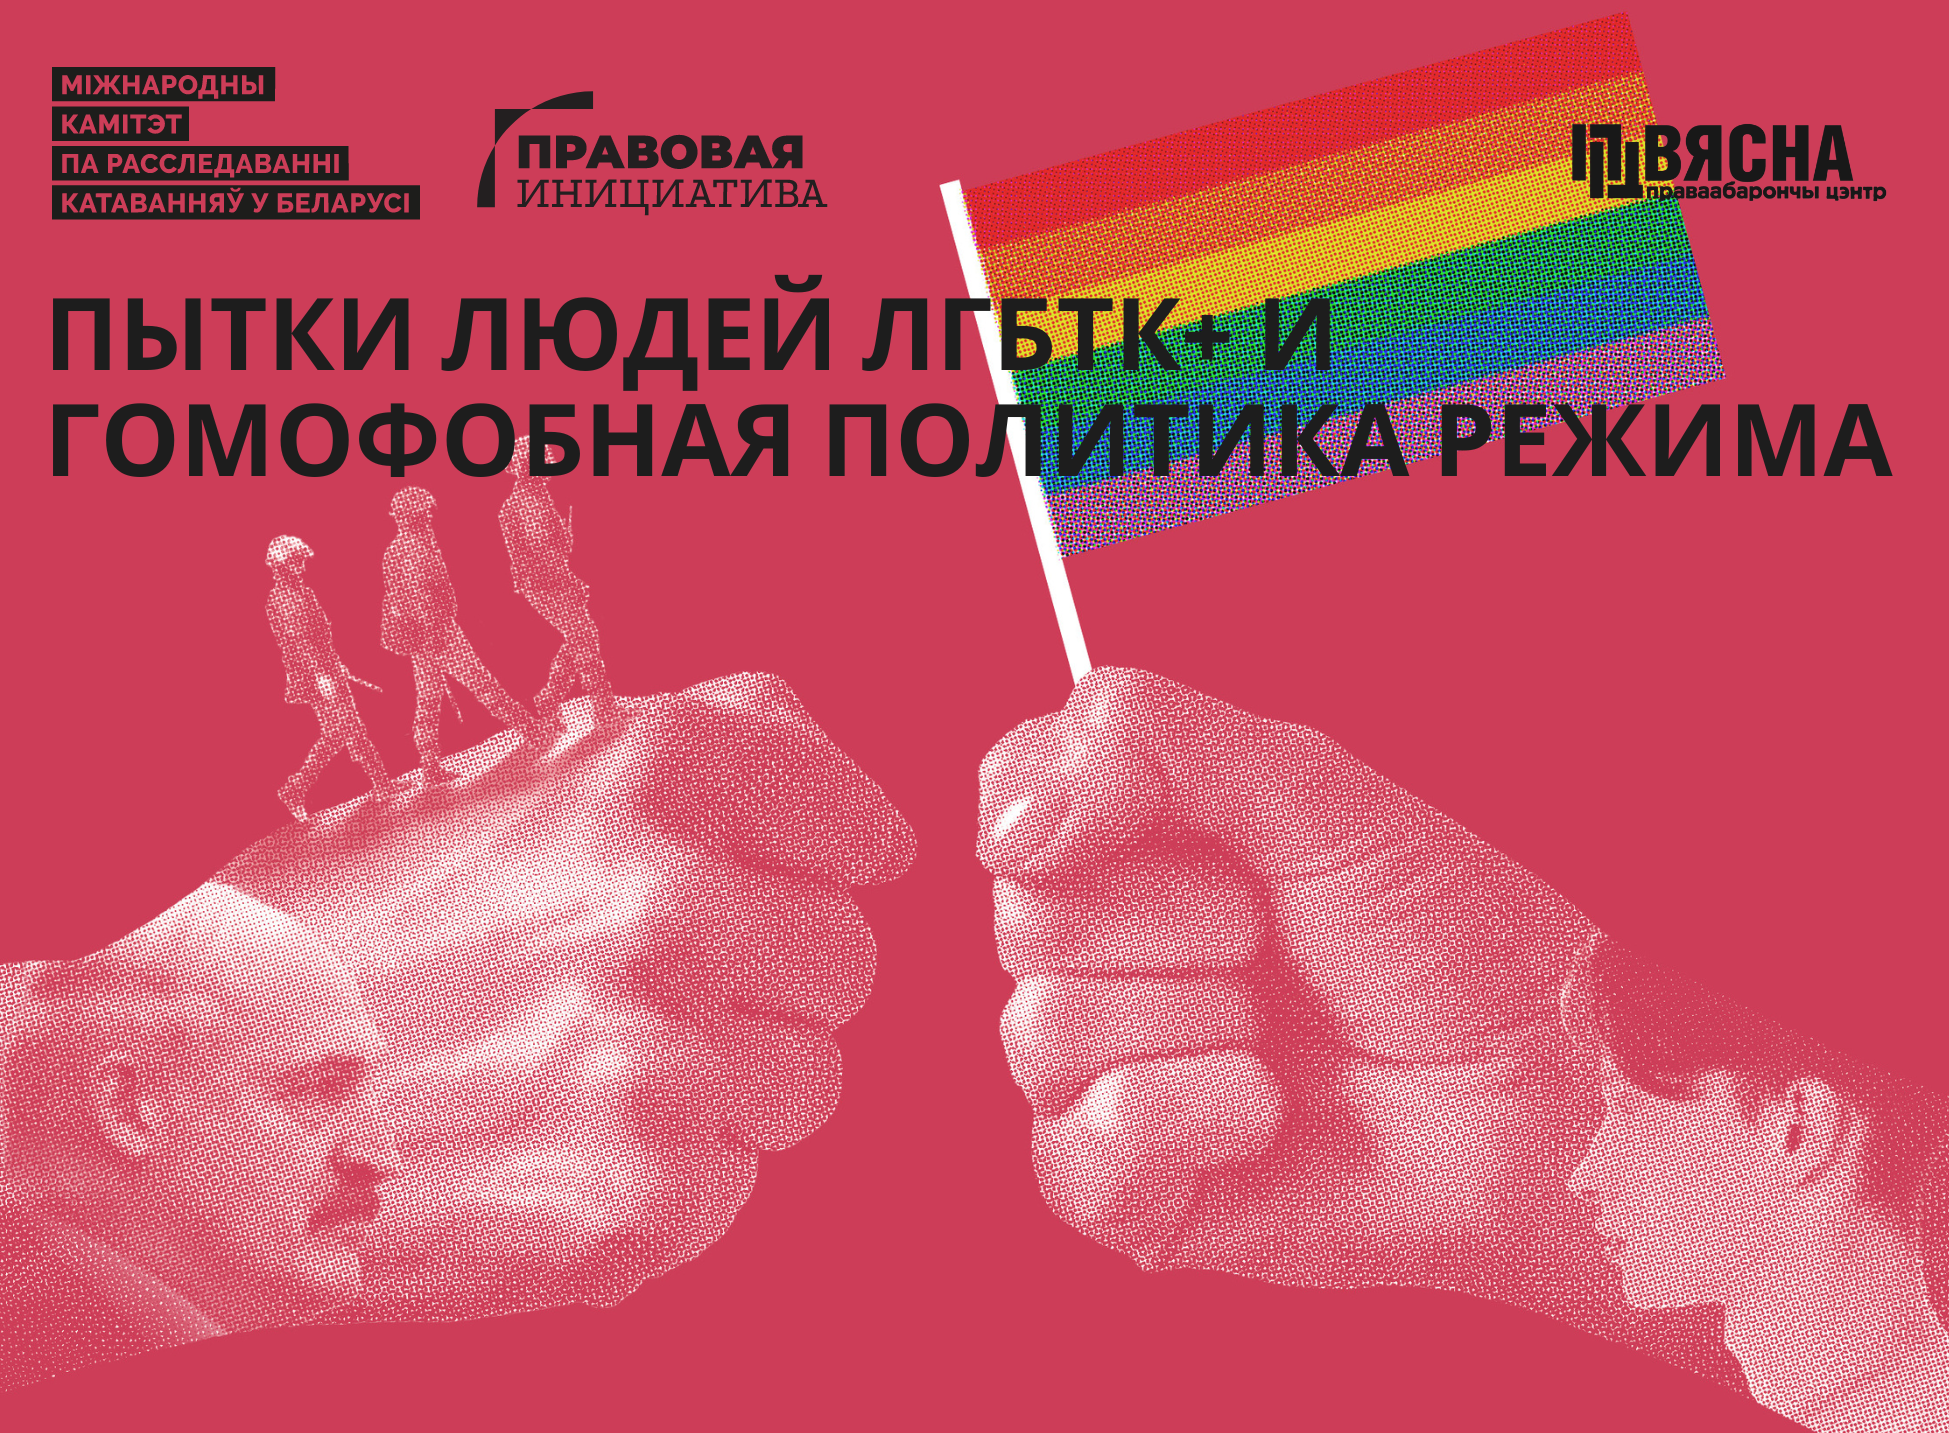 «Пытки режима» гомофобная людей политика ЛГБТК+ Отчет и